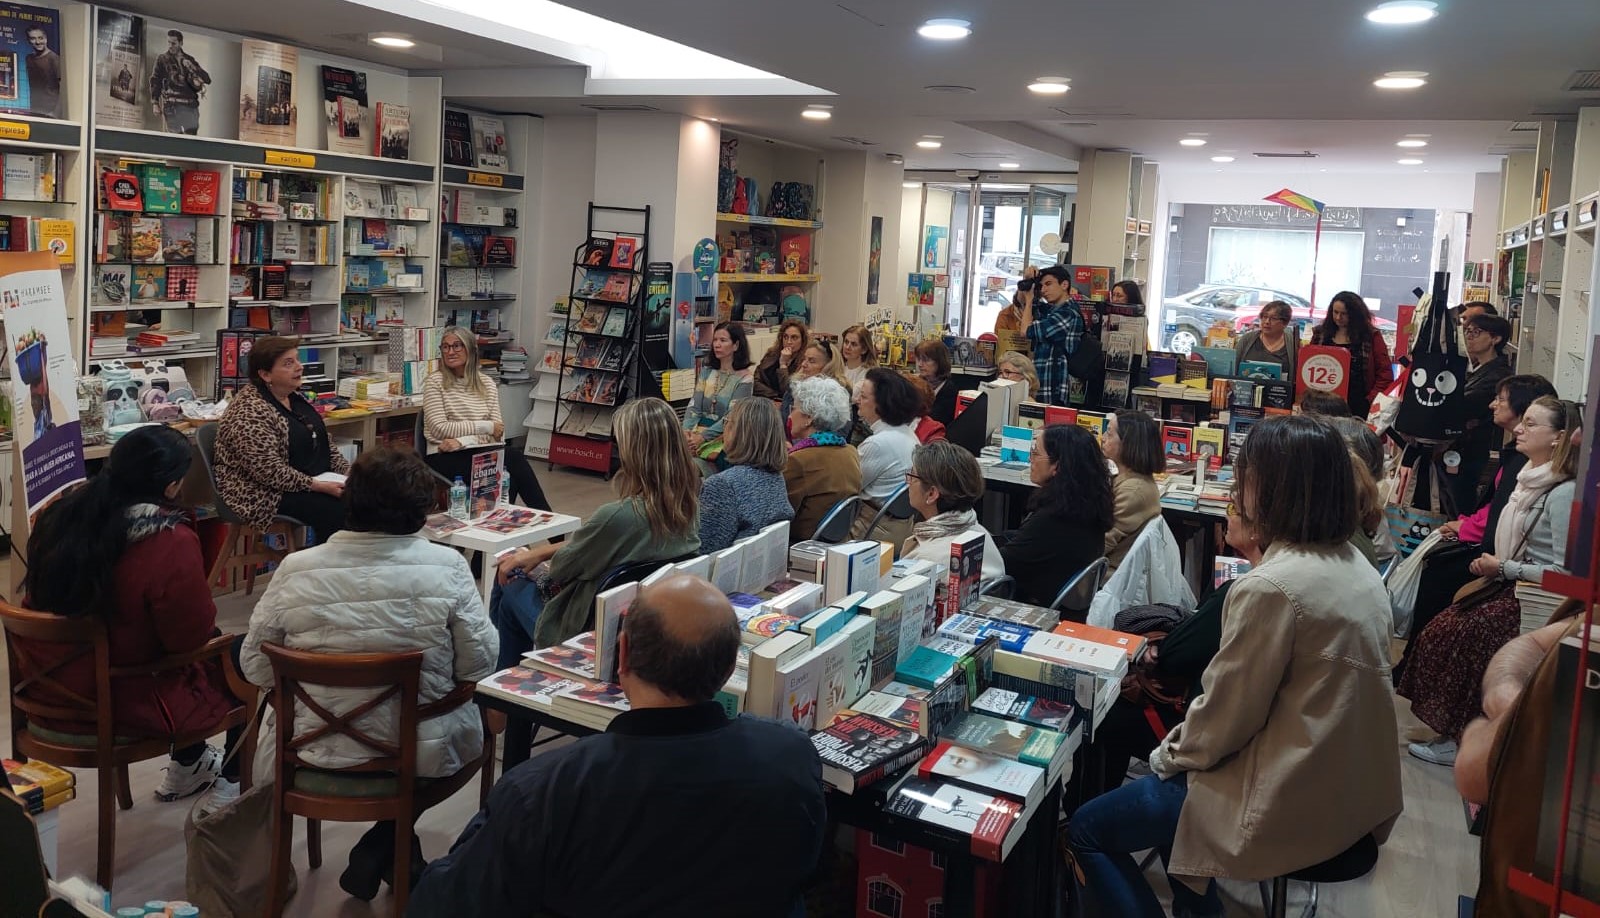 Presentación del libro “Mujeres de Ébano” de Raquel Rodríguez de Bujalance en La Coruña